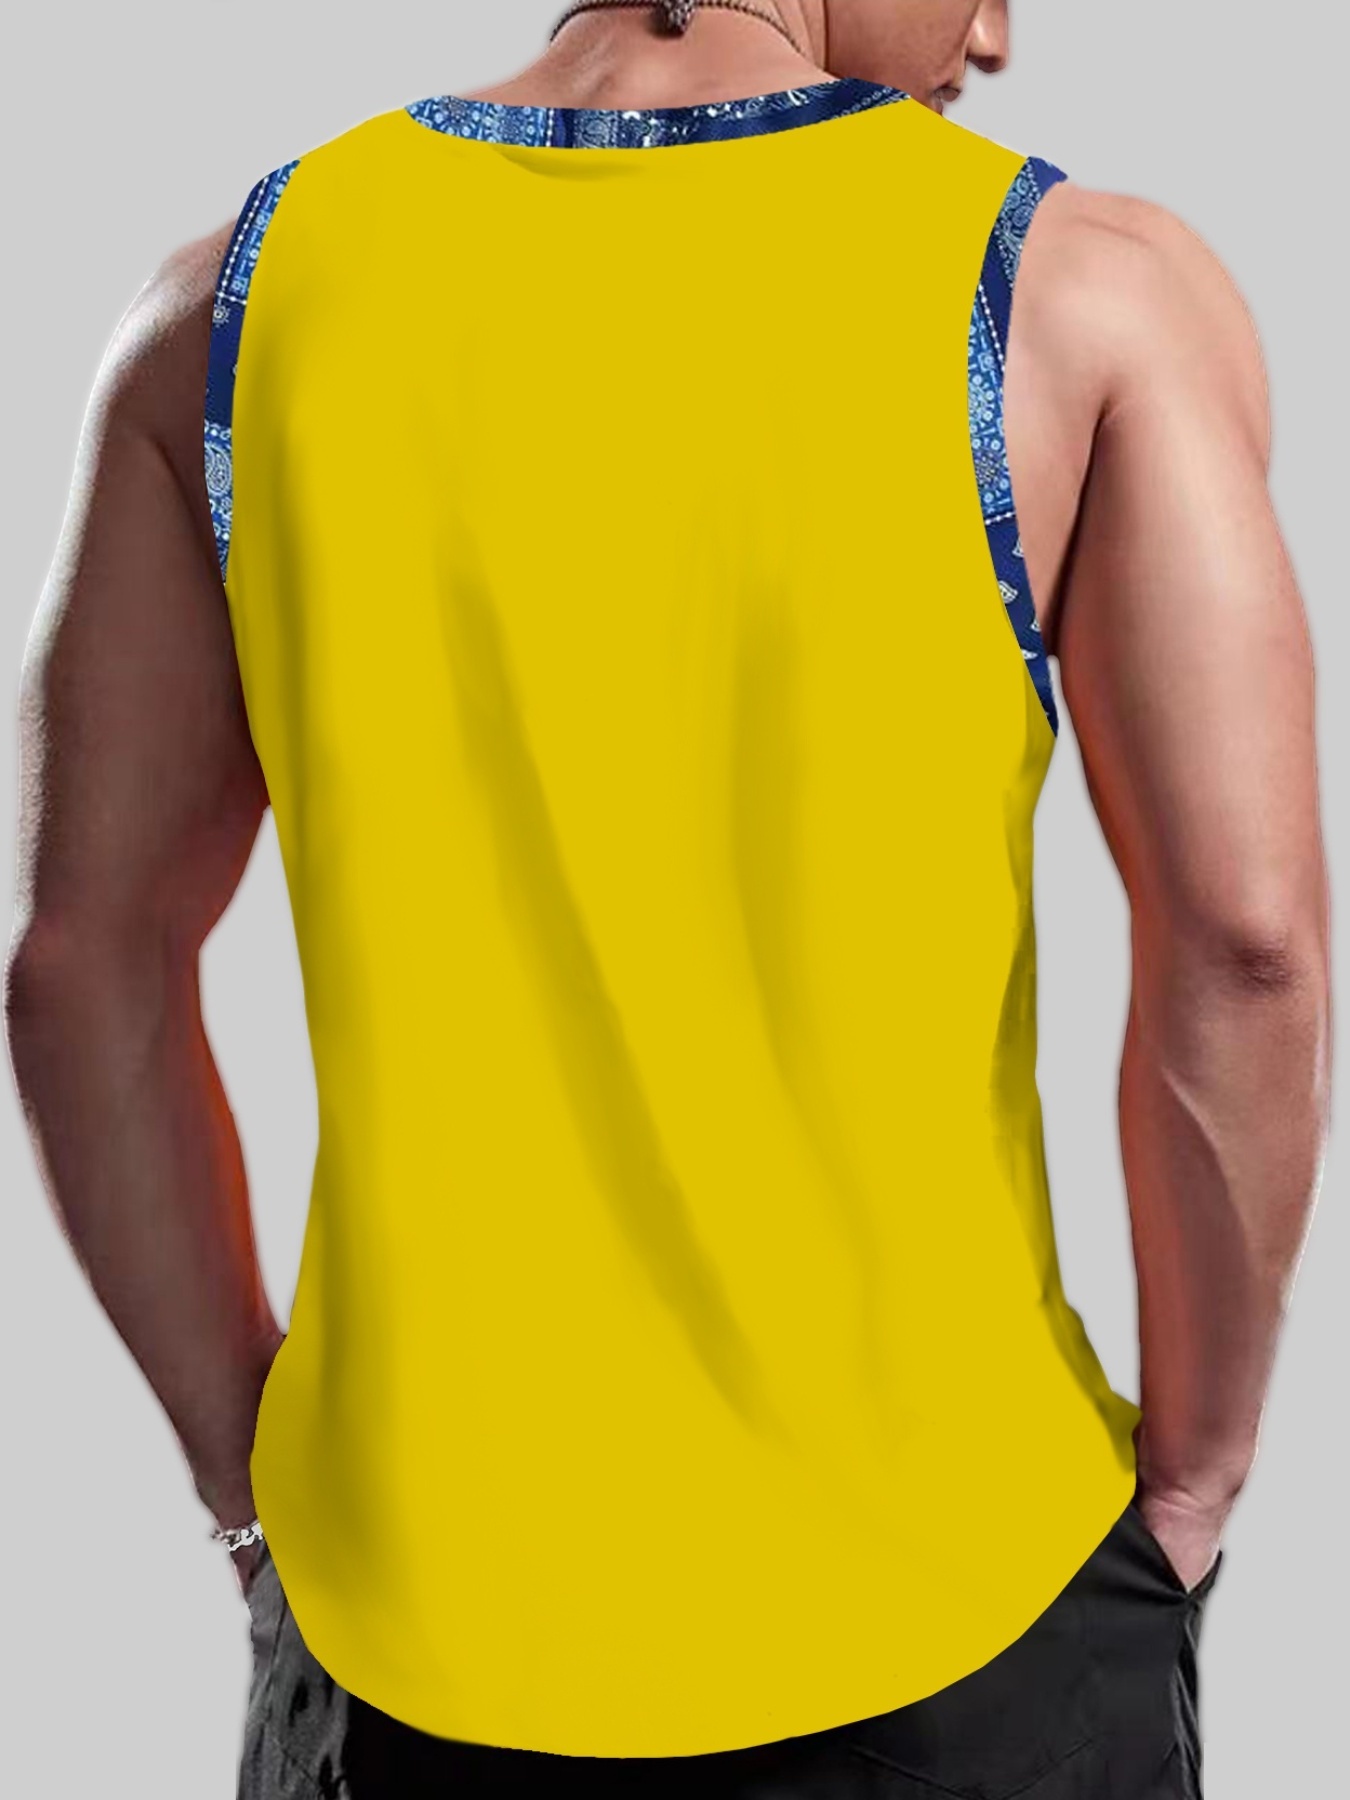 Sleeveless Tank Top Basketball jersey vest design t-shirt template